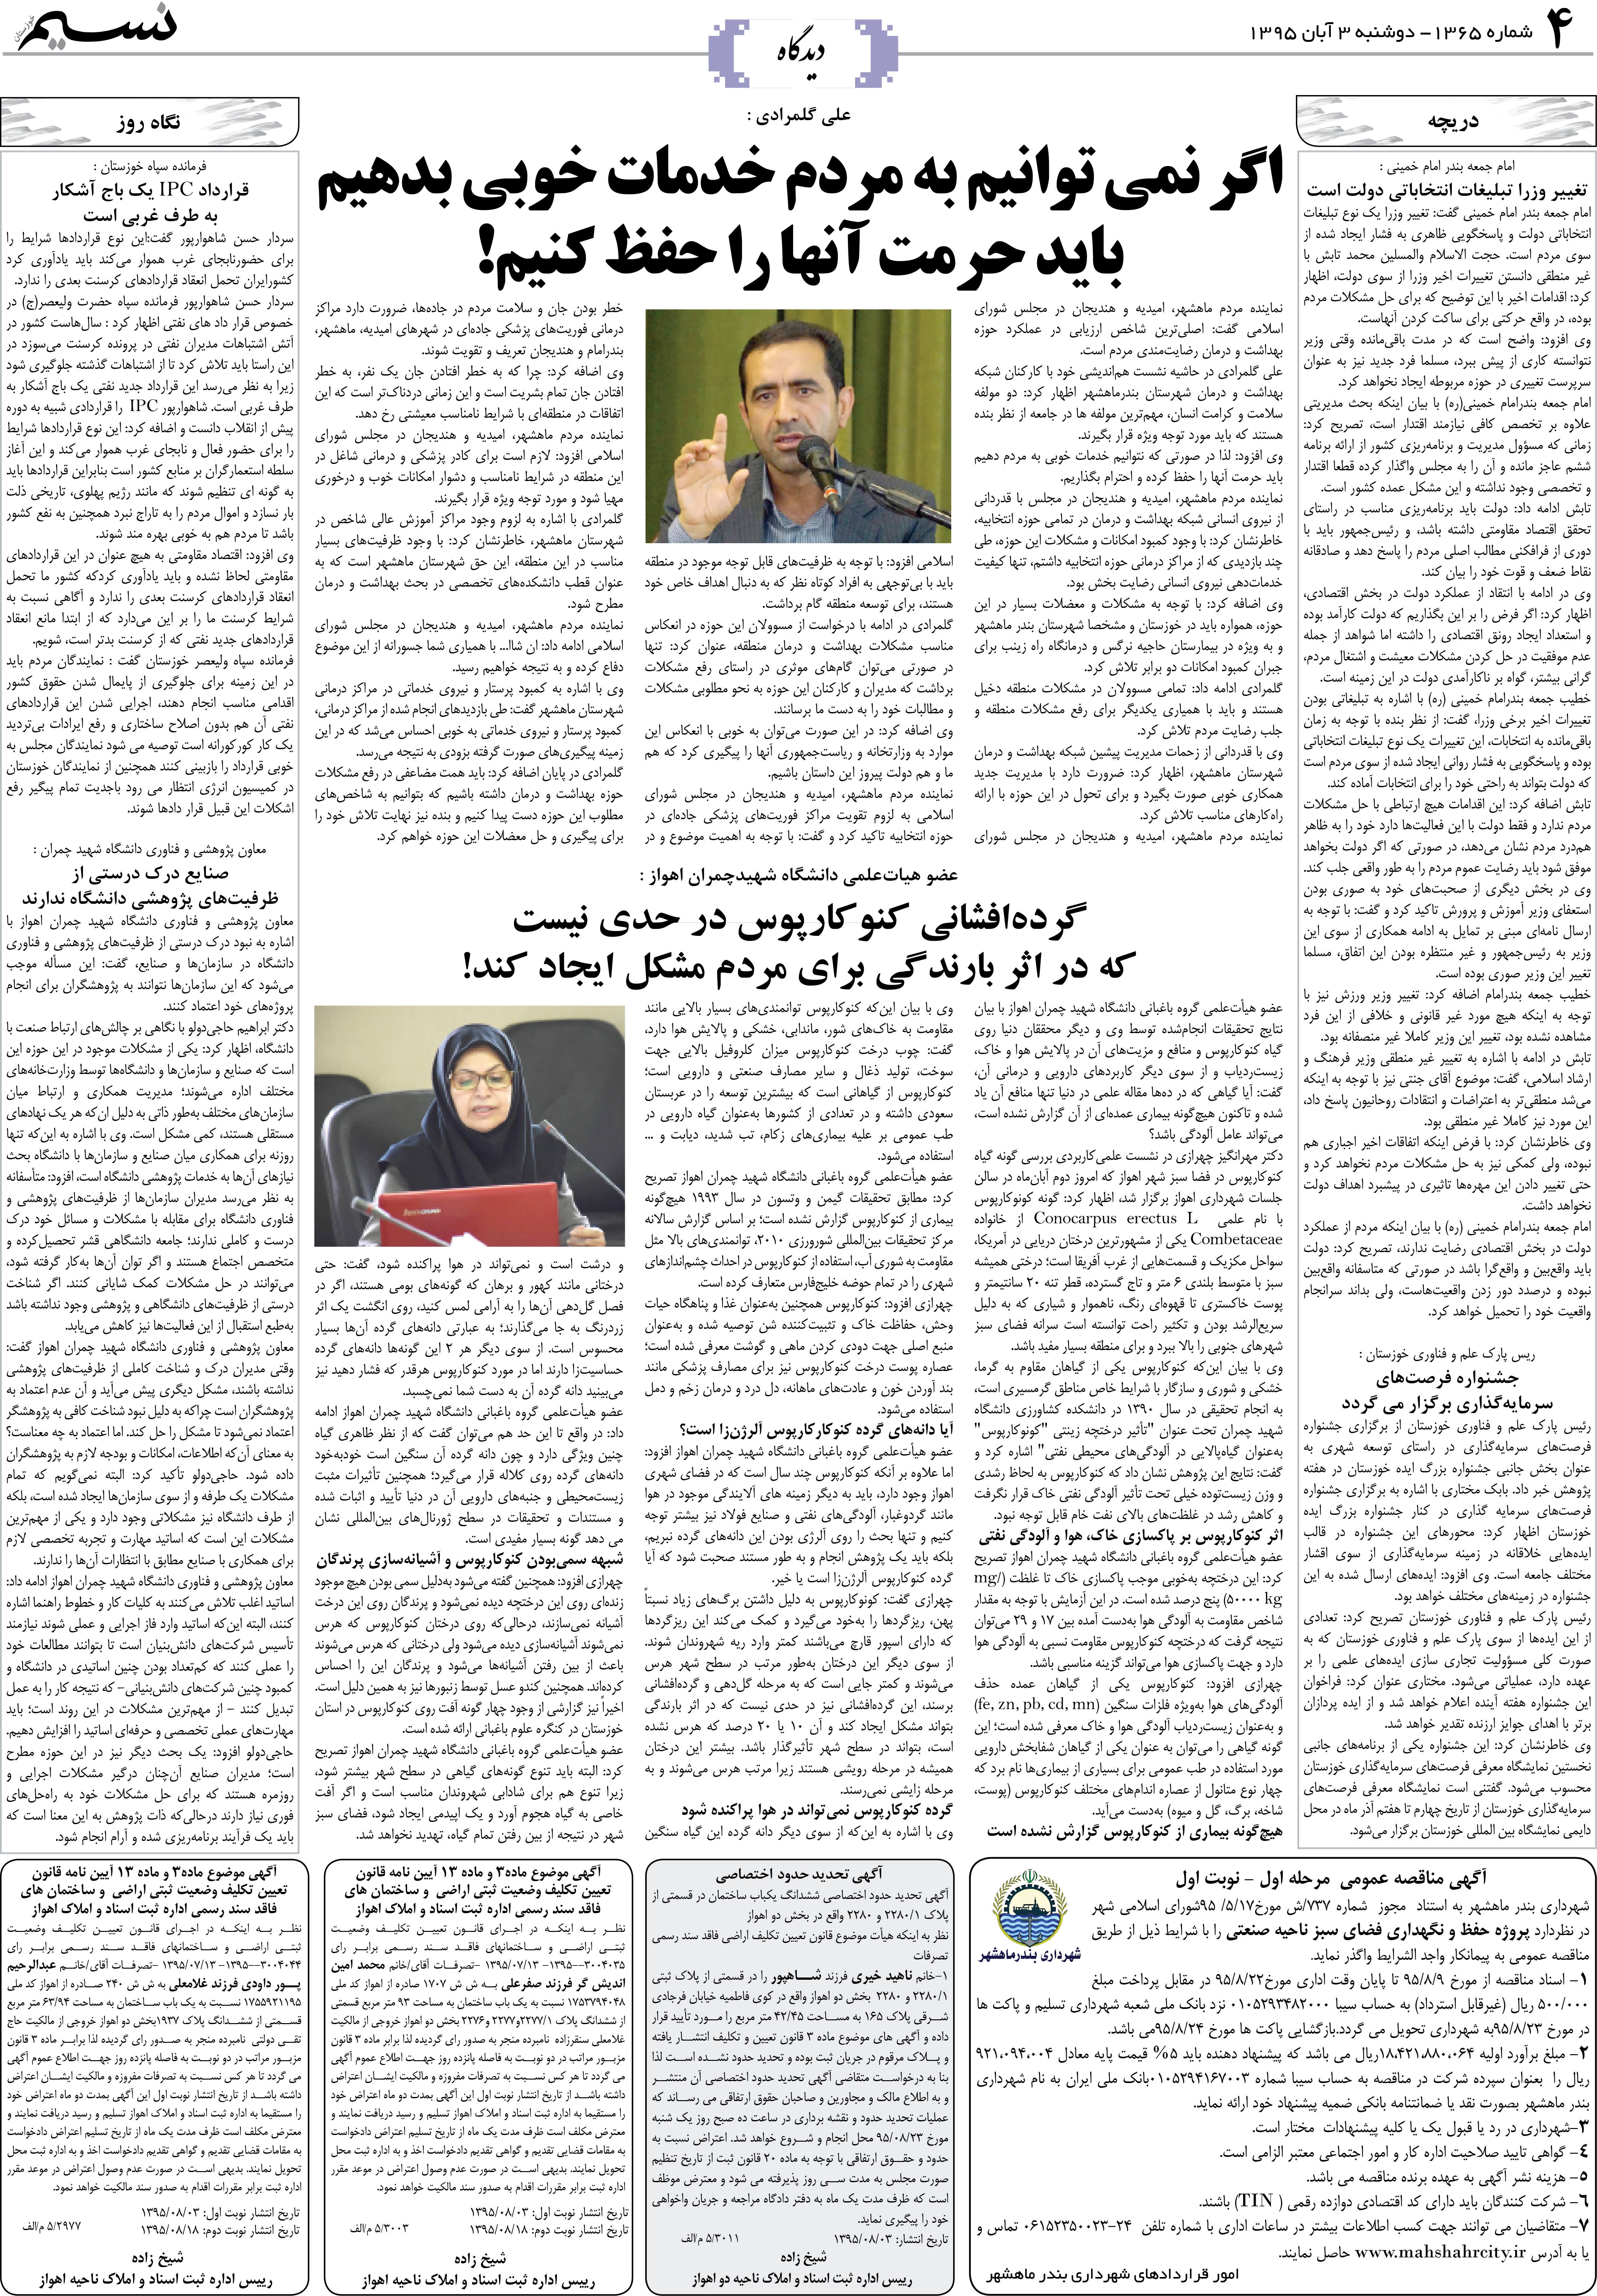 صفحه دیدگاه روزنامه نسیم شماره 1365